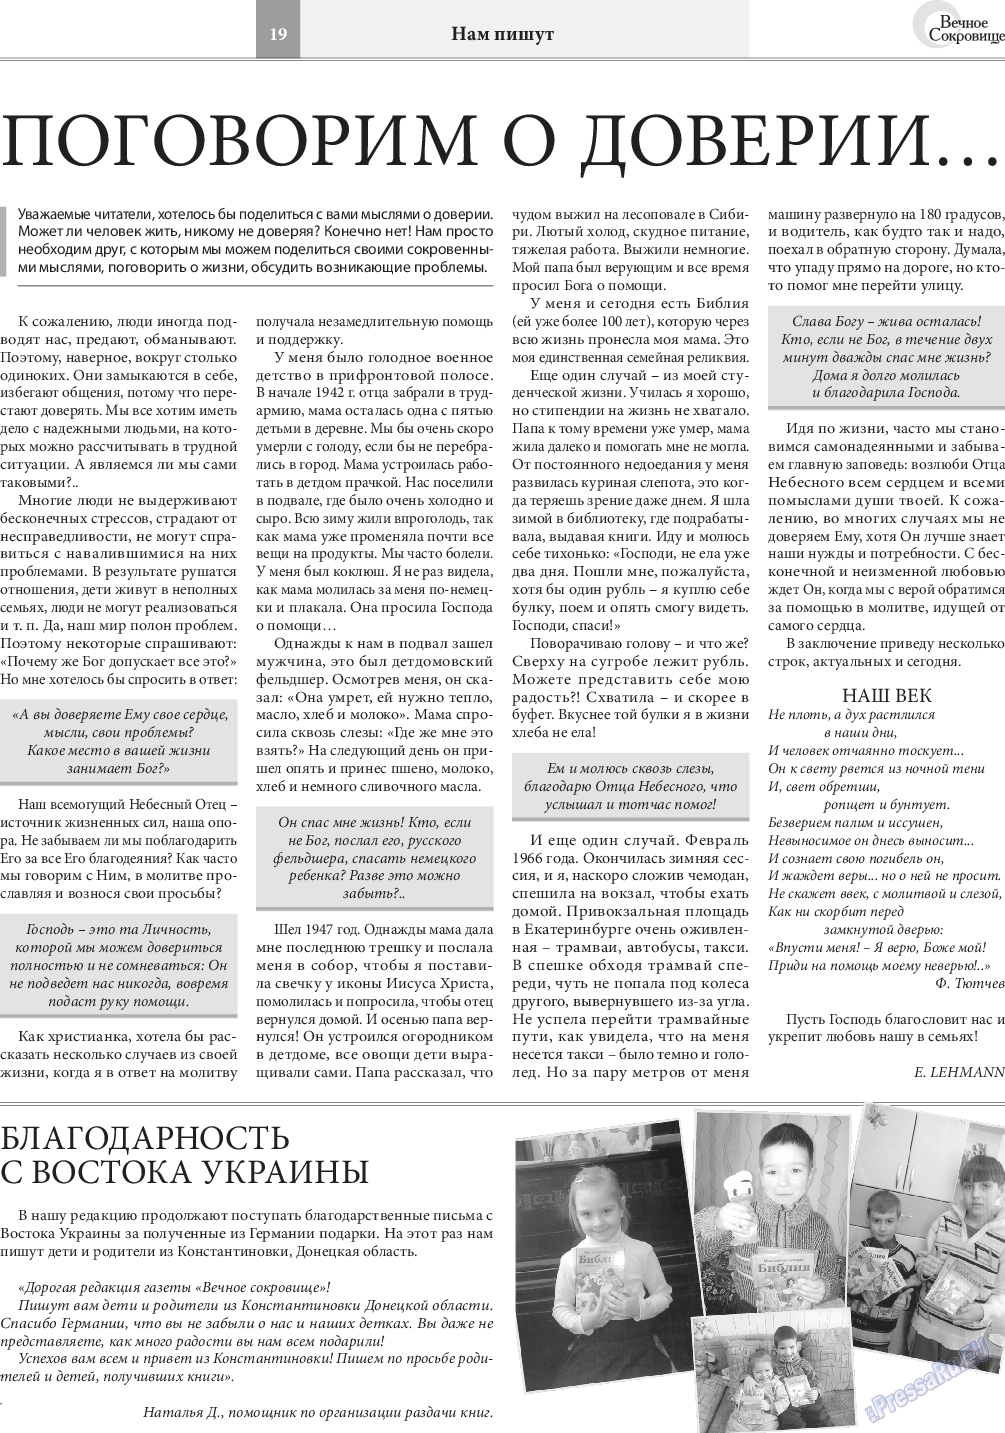 Вечное сокровище, газета. 2017 №4 стр.19